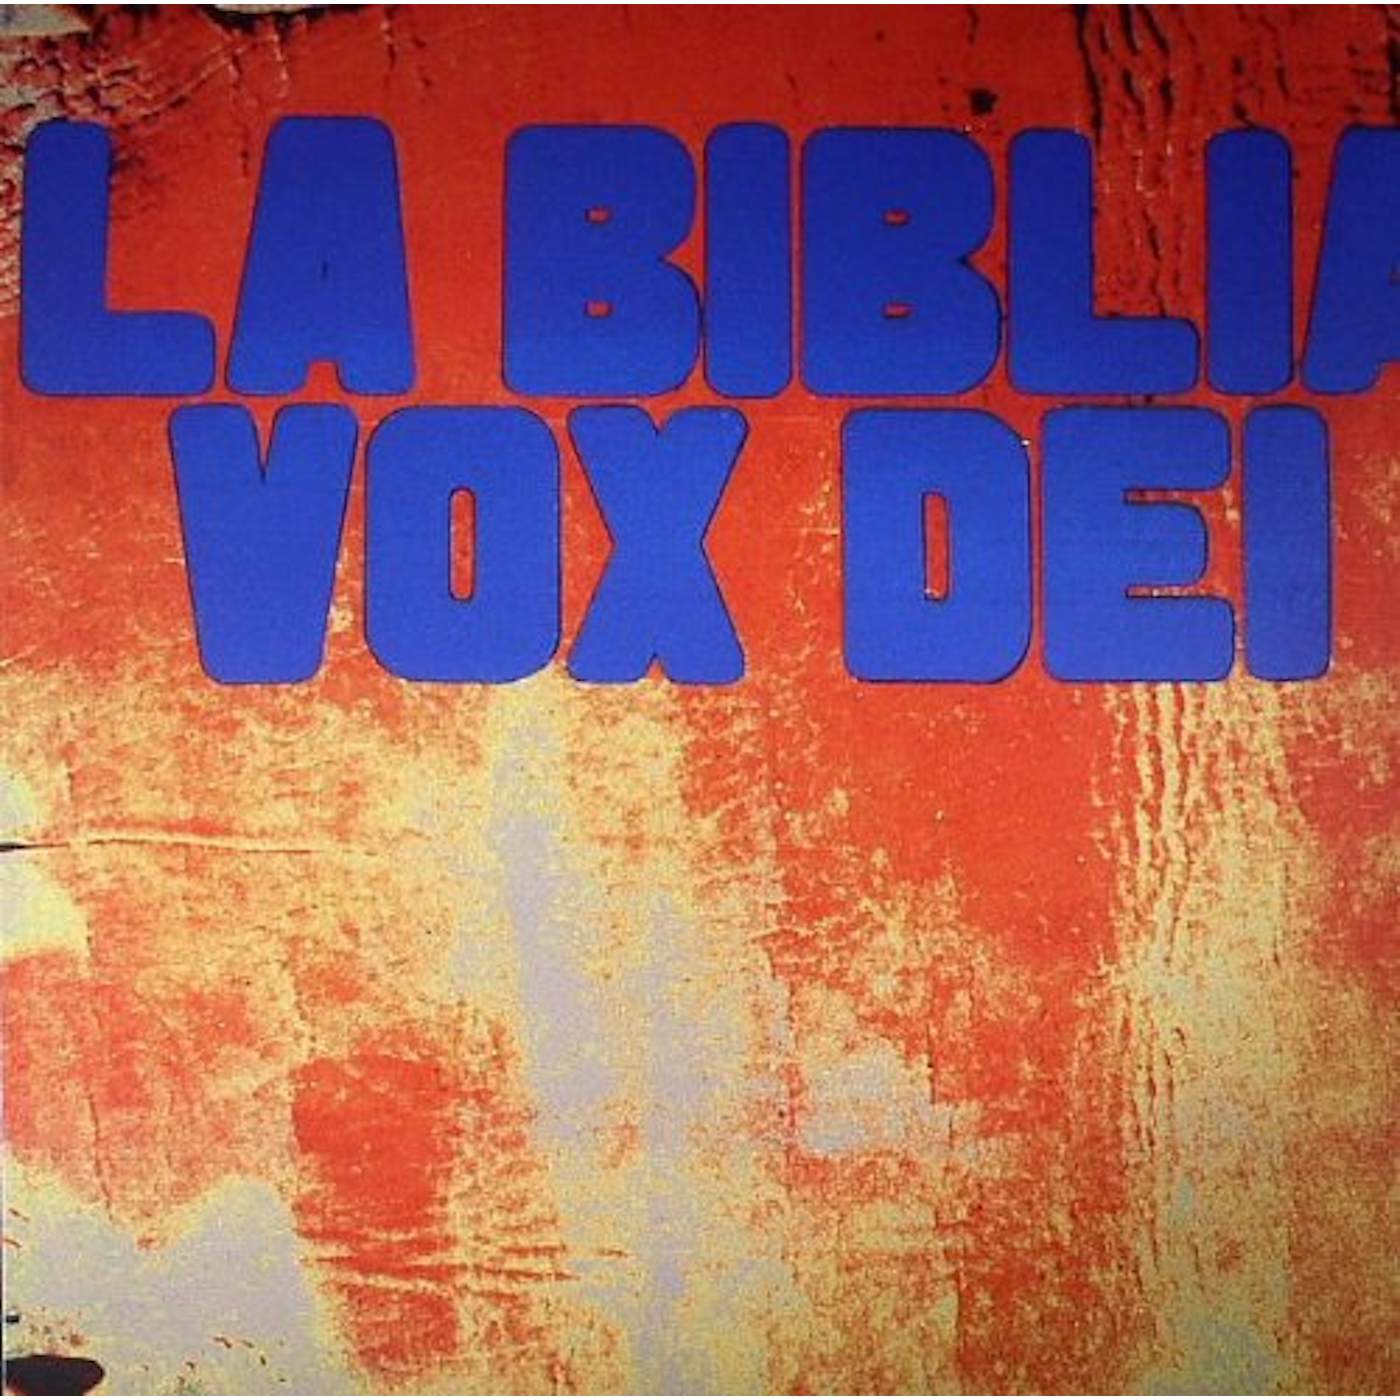 Vox Dei BIBLIA Vinyl Record